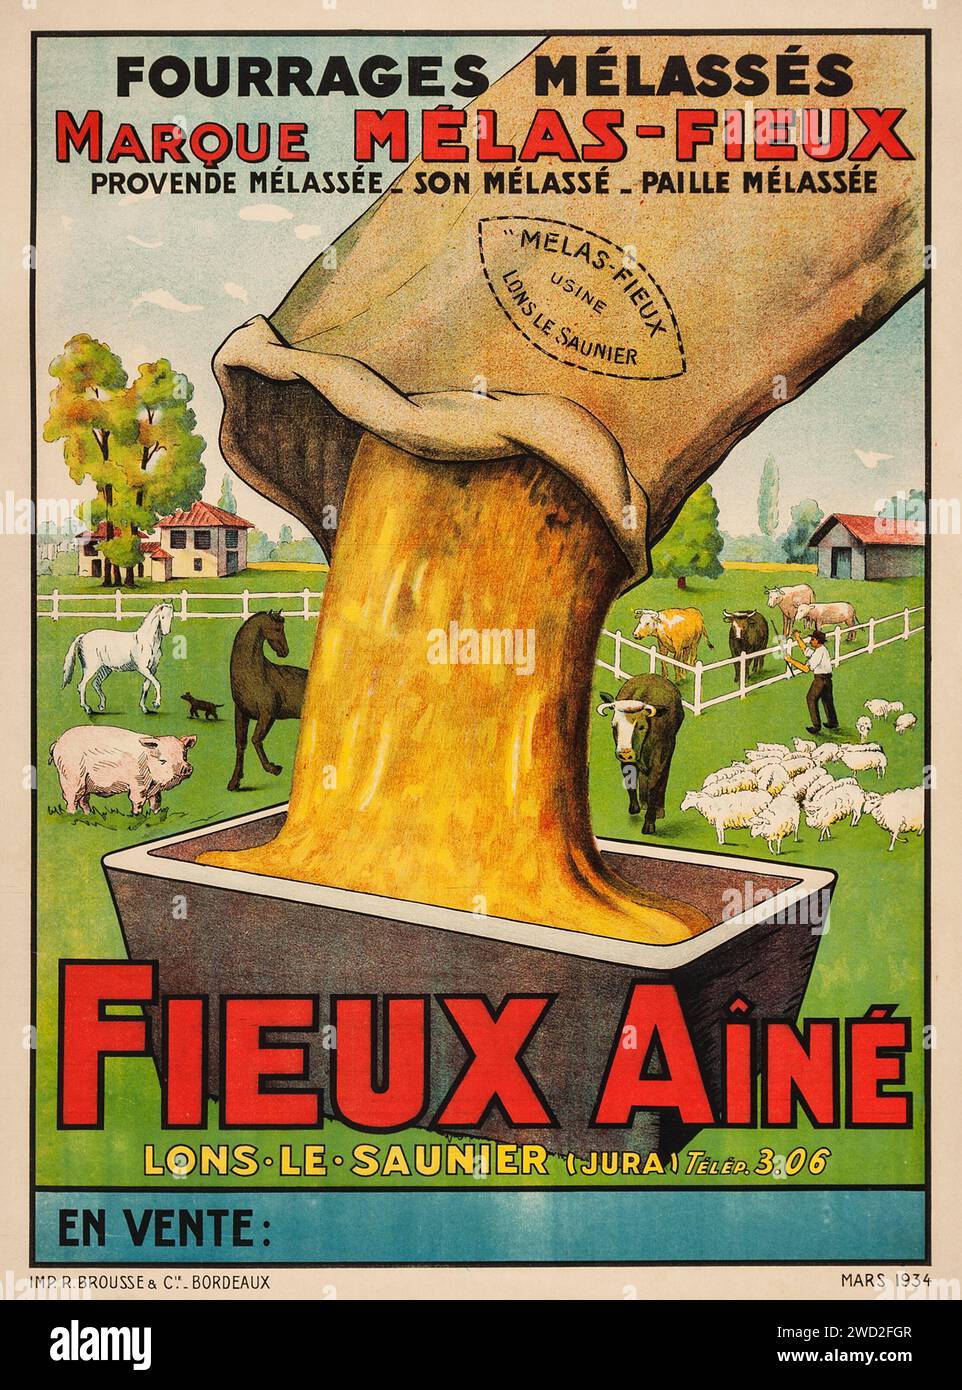 Fieux aine (Mars, 1934). Affiche publicitaire française - utilisé pour le pâturage du bétail et du bétail, Fieux aine était un fourrage enrichi en mélasse utilisé pour produire de la viande plus grasse et des produits laitiers - animaux de ferme, porcs, chevaux, vaches Banque D'Images